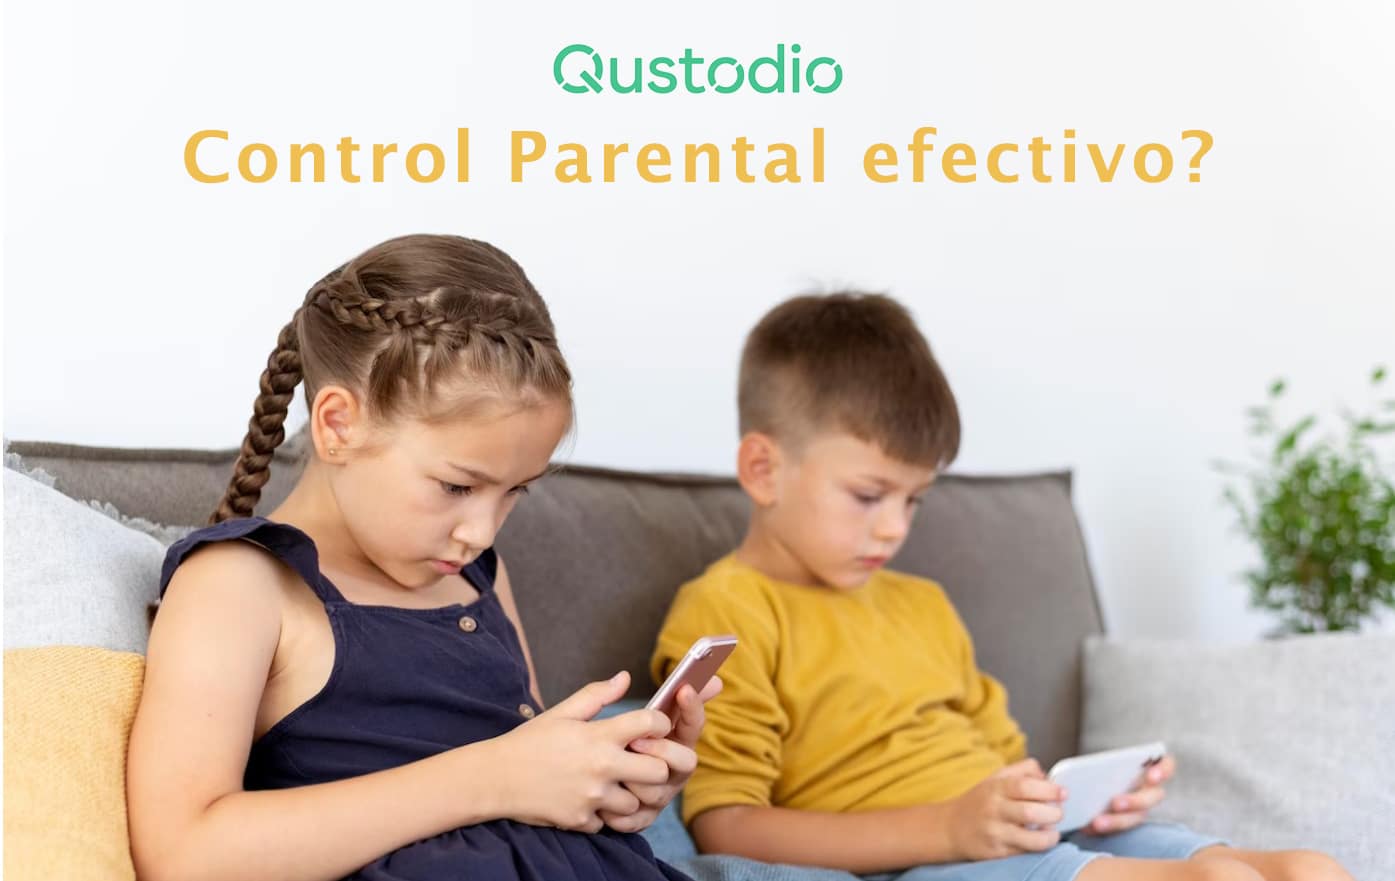 qustodio control parental